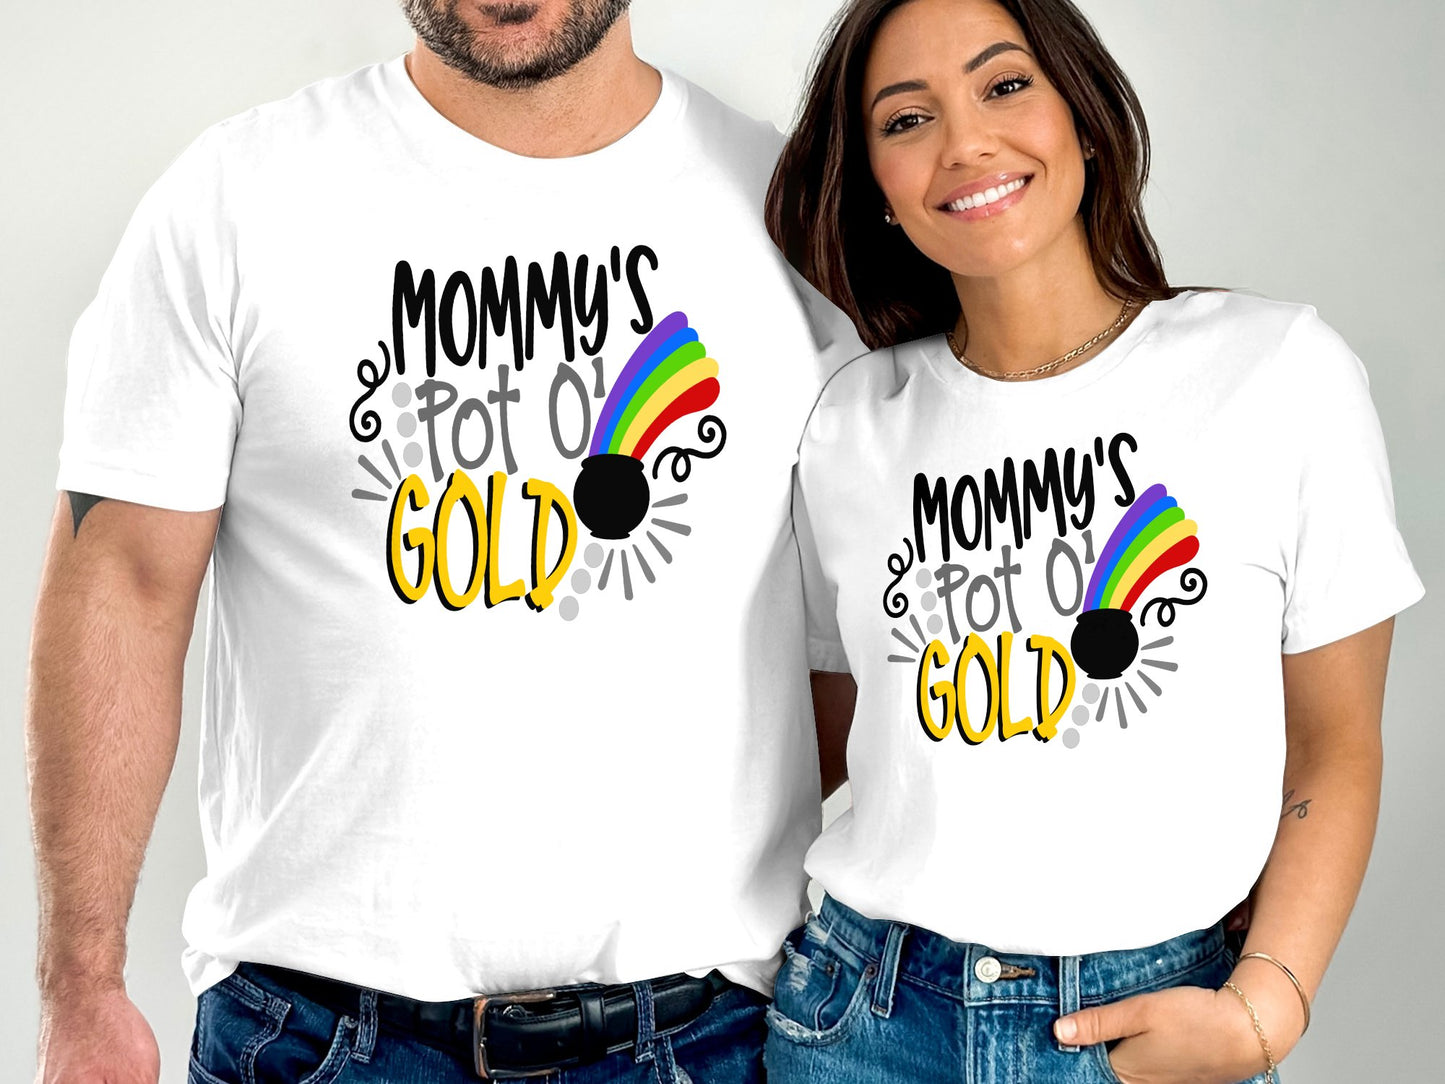 Mommy's pot o gold (St. Patrick's Day T-Shirt)